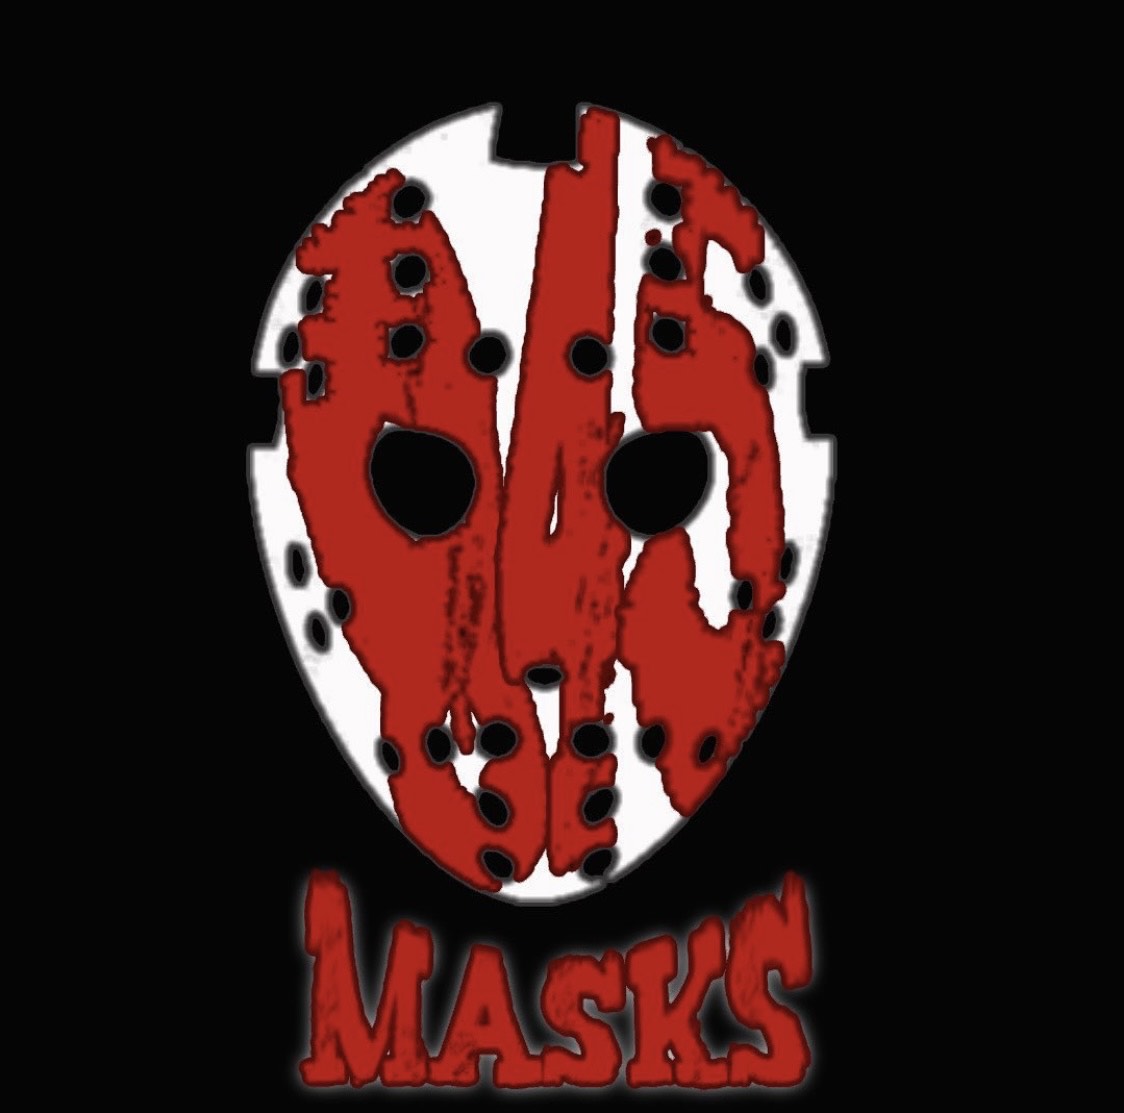 845 Masks